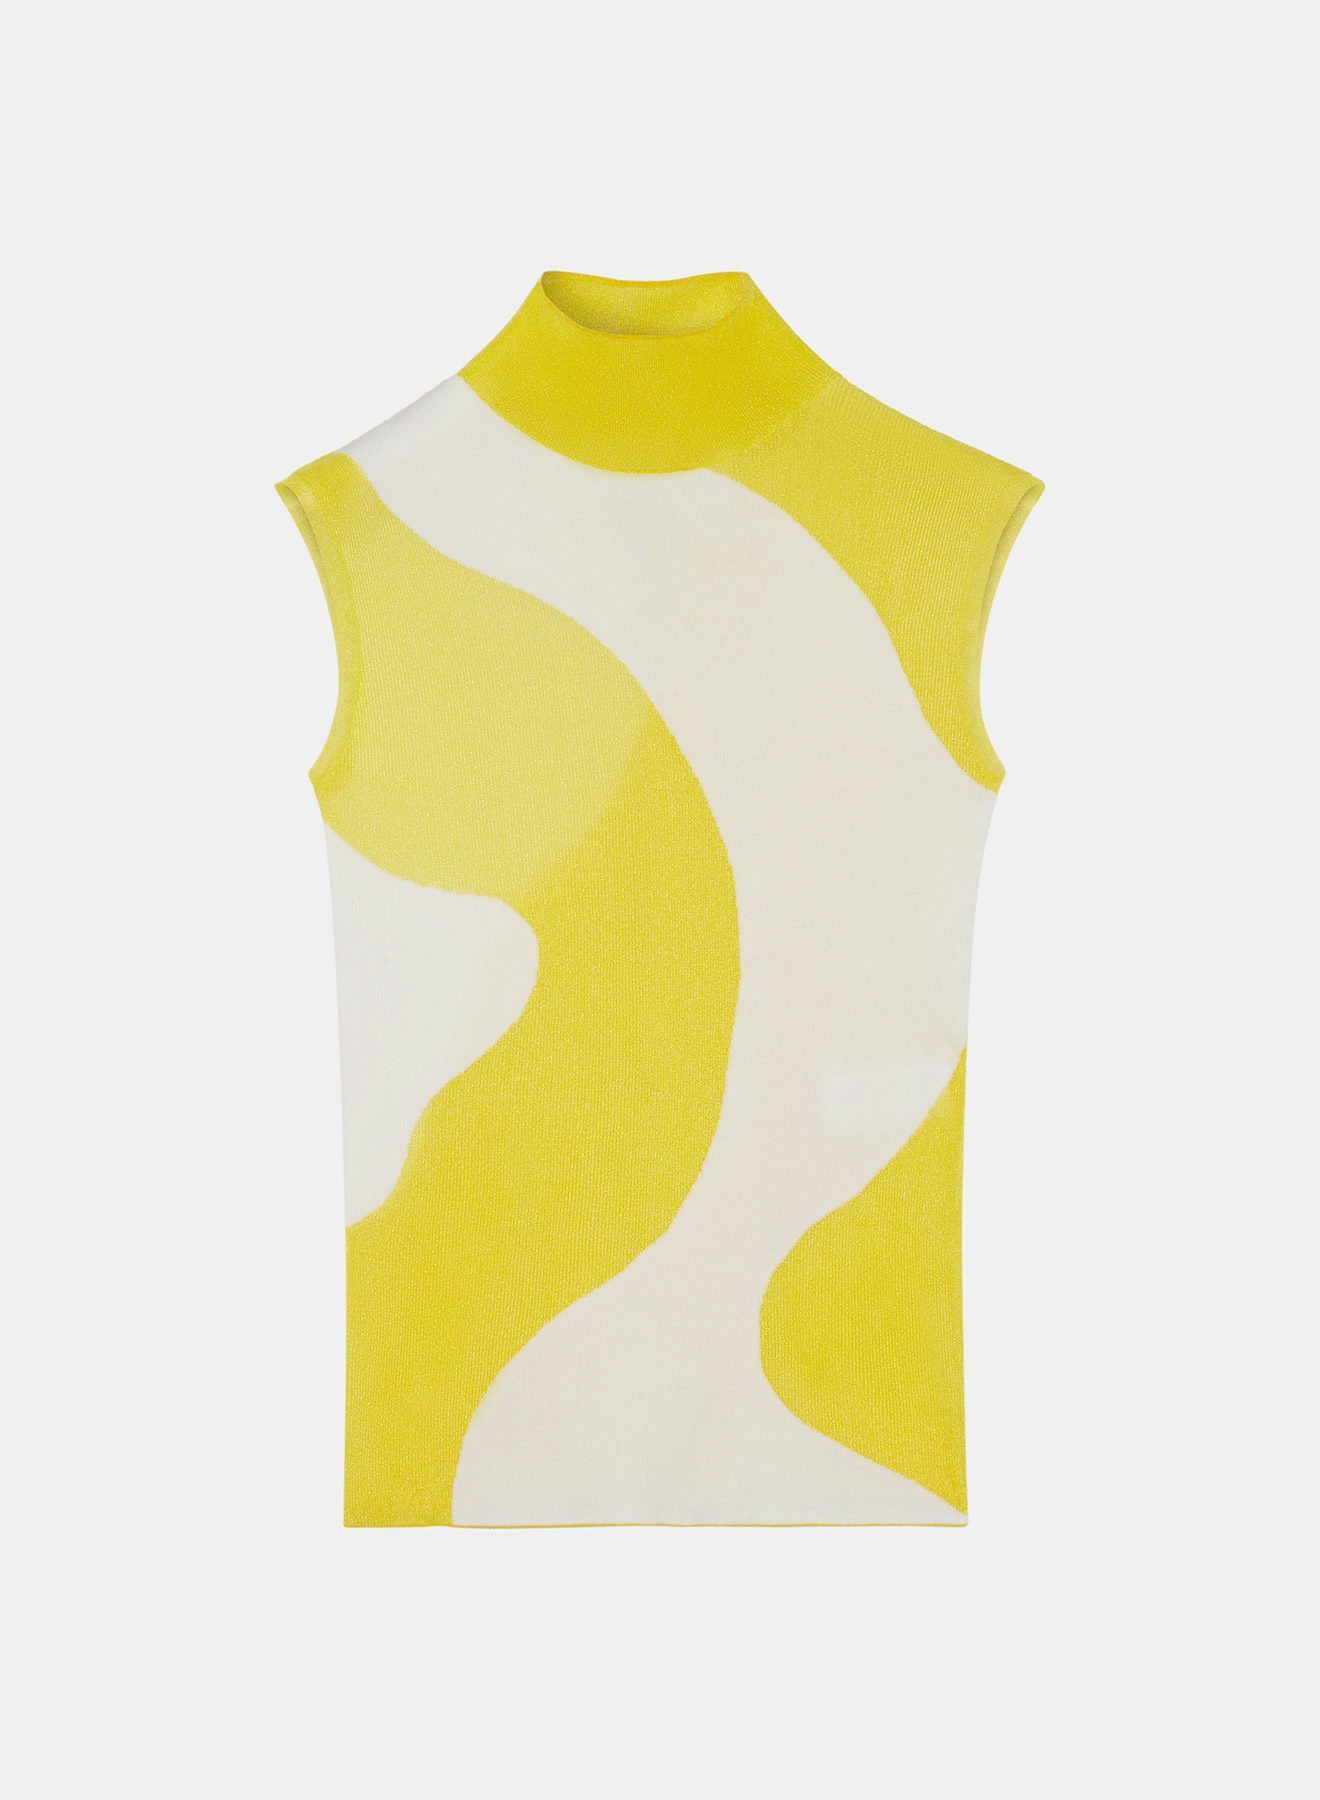 Top de cuello alto en intarsia amarillo y blanco - Nina Ricci